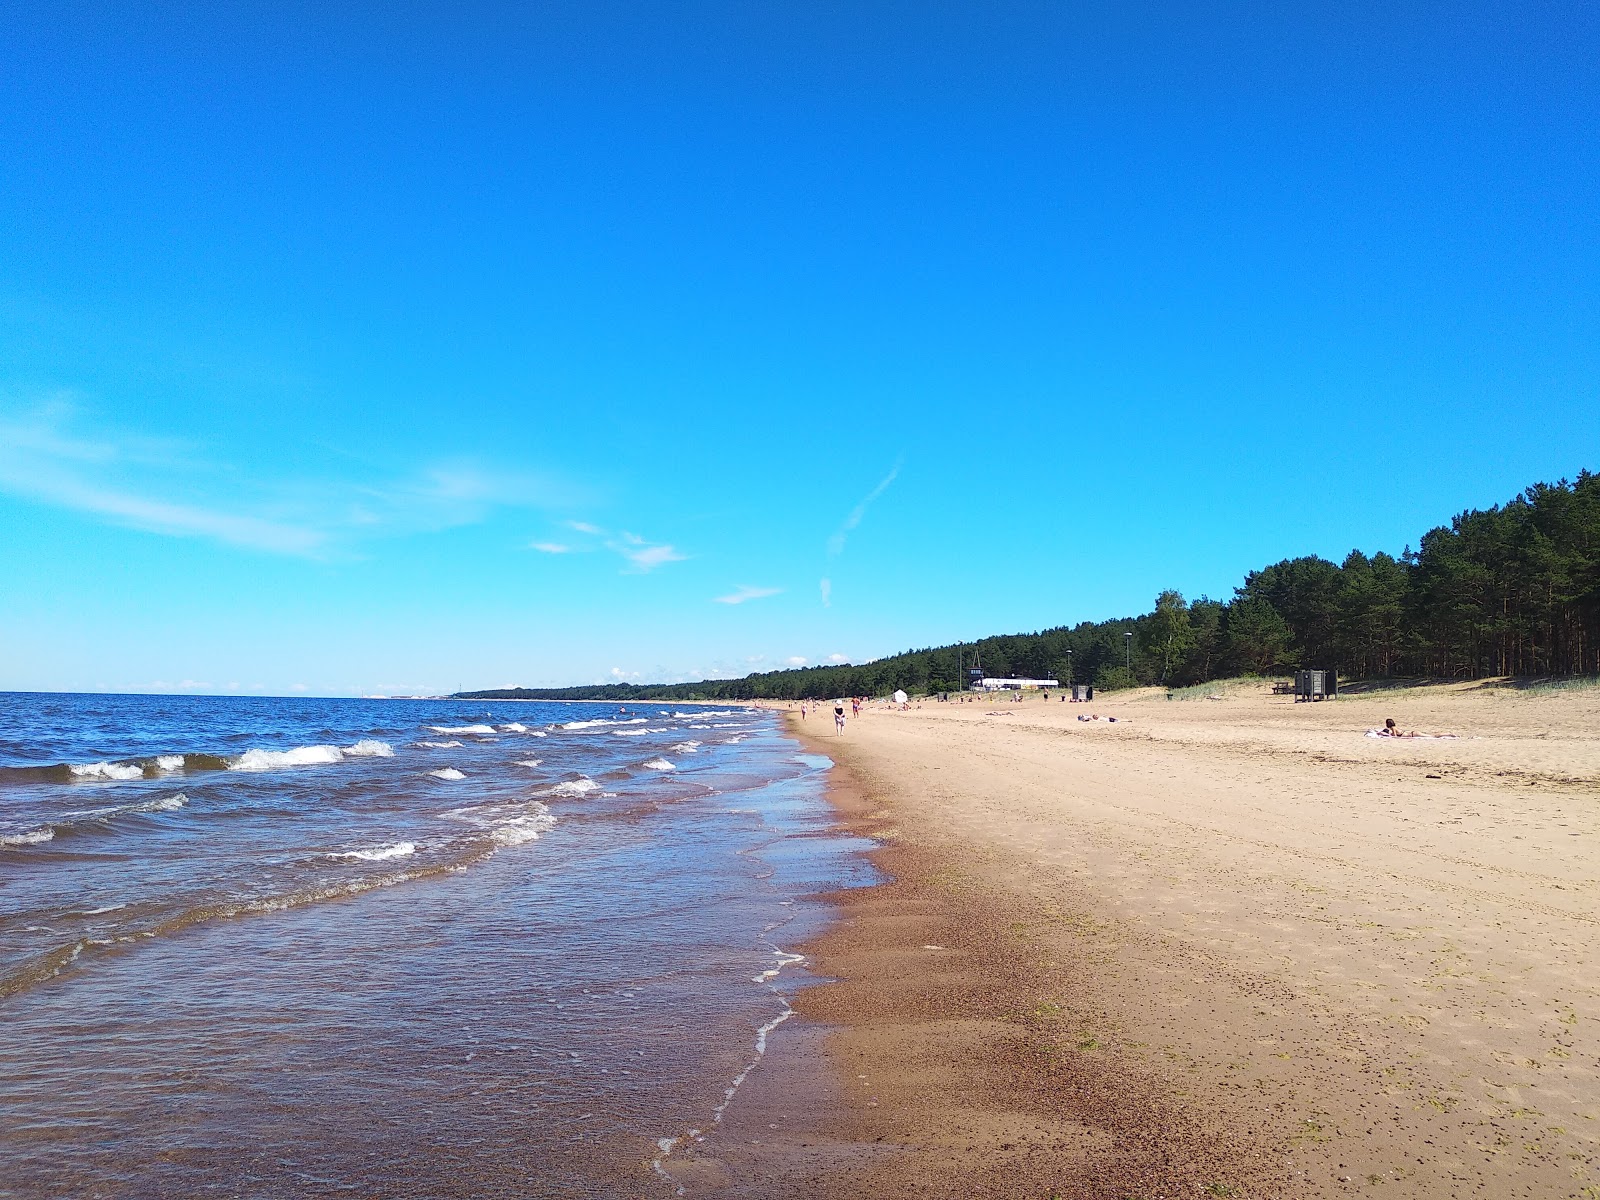 Zdjęcie Saulkrasti beach II z powierzchnią jasny piasek